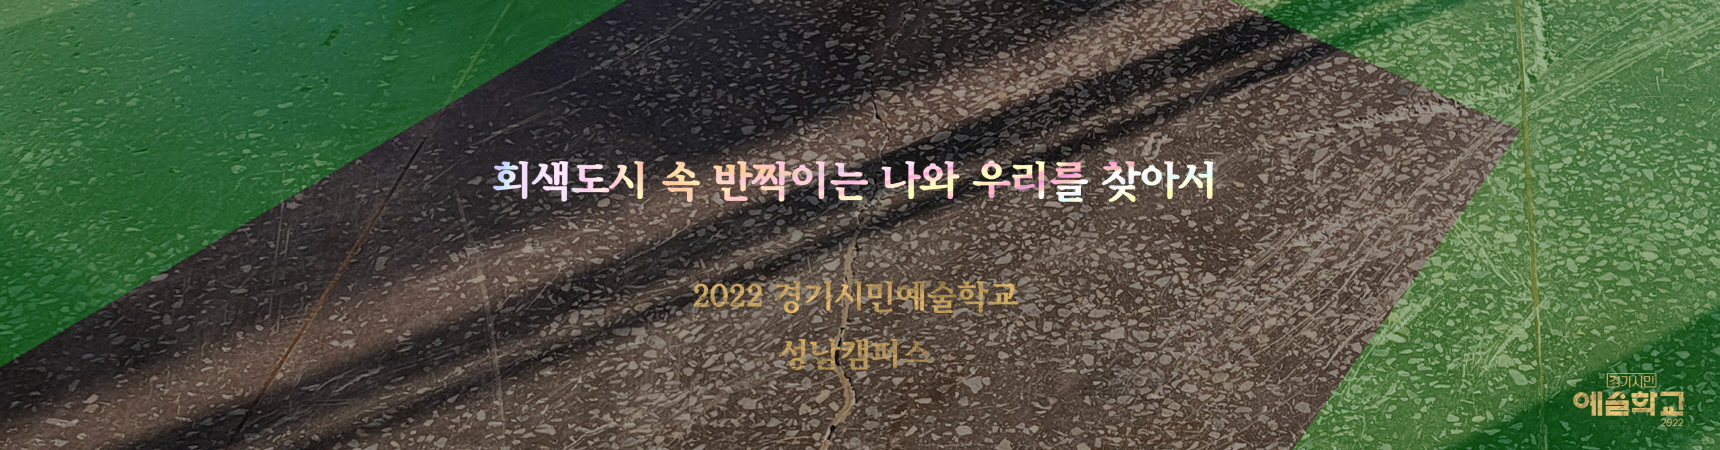 2022 경기시민예술학교 성남캠퍼스
www.snsiminedu.art
사업명 2022 경기시민예술학교 기초협력사업
주최 경기도, 경기문화재단
주관 성남문화재단